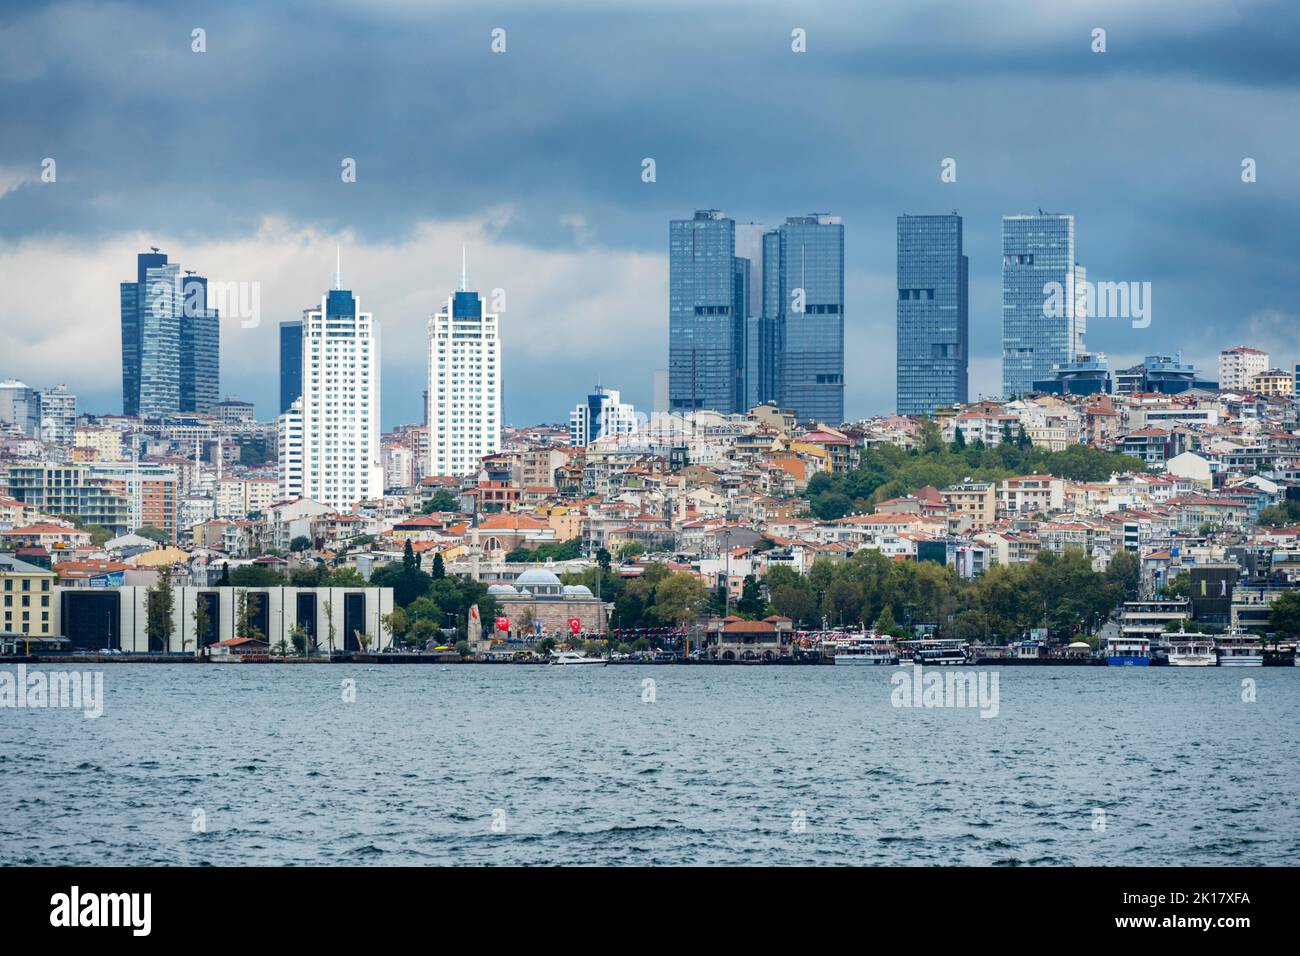 Türkei, Istanbul, Blick über den Bosporus auf die Hochhäuser von Levent Foto Stock